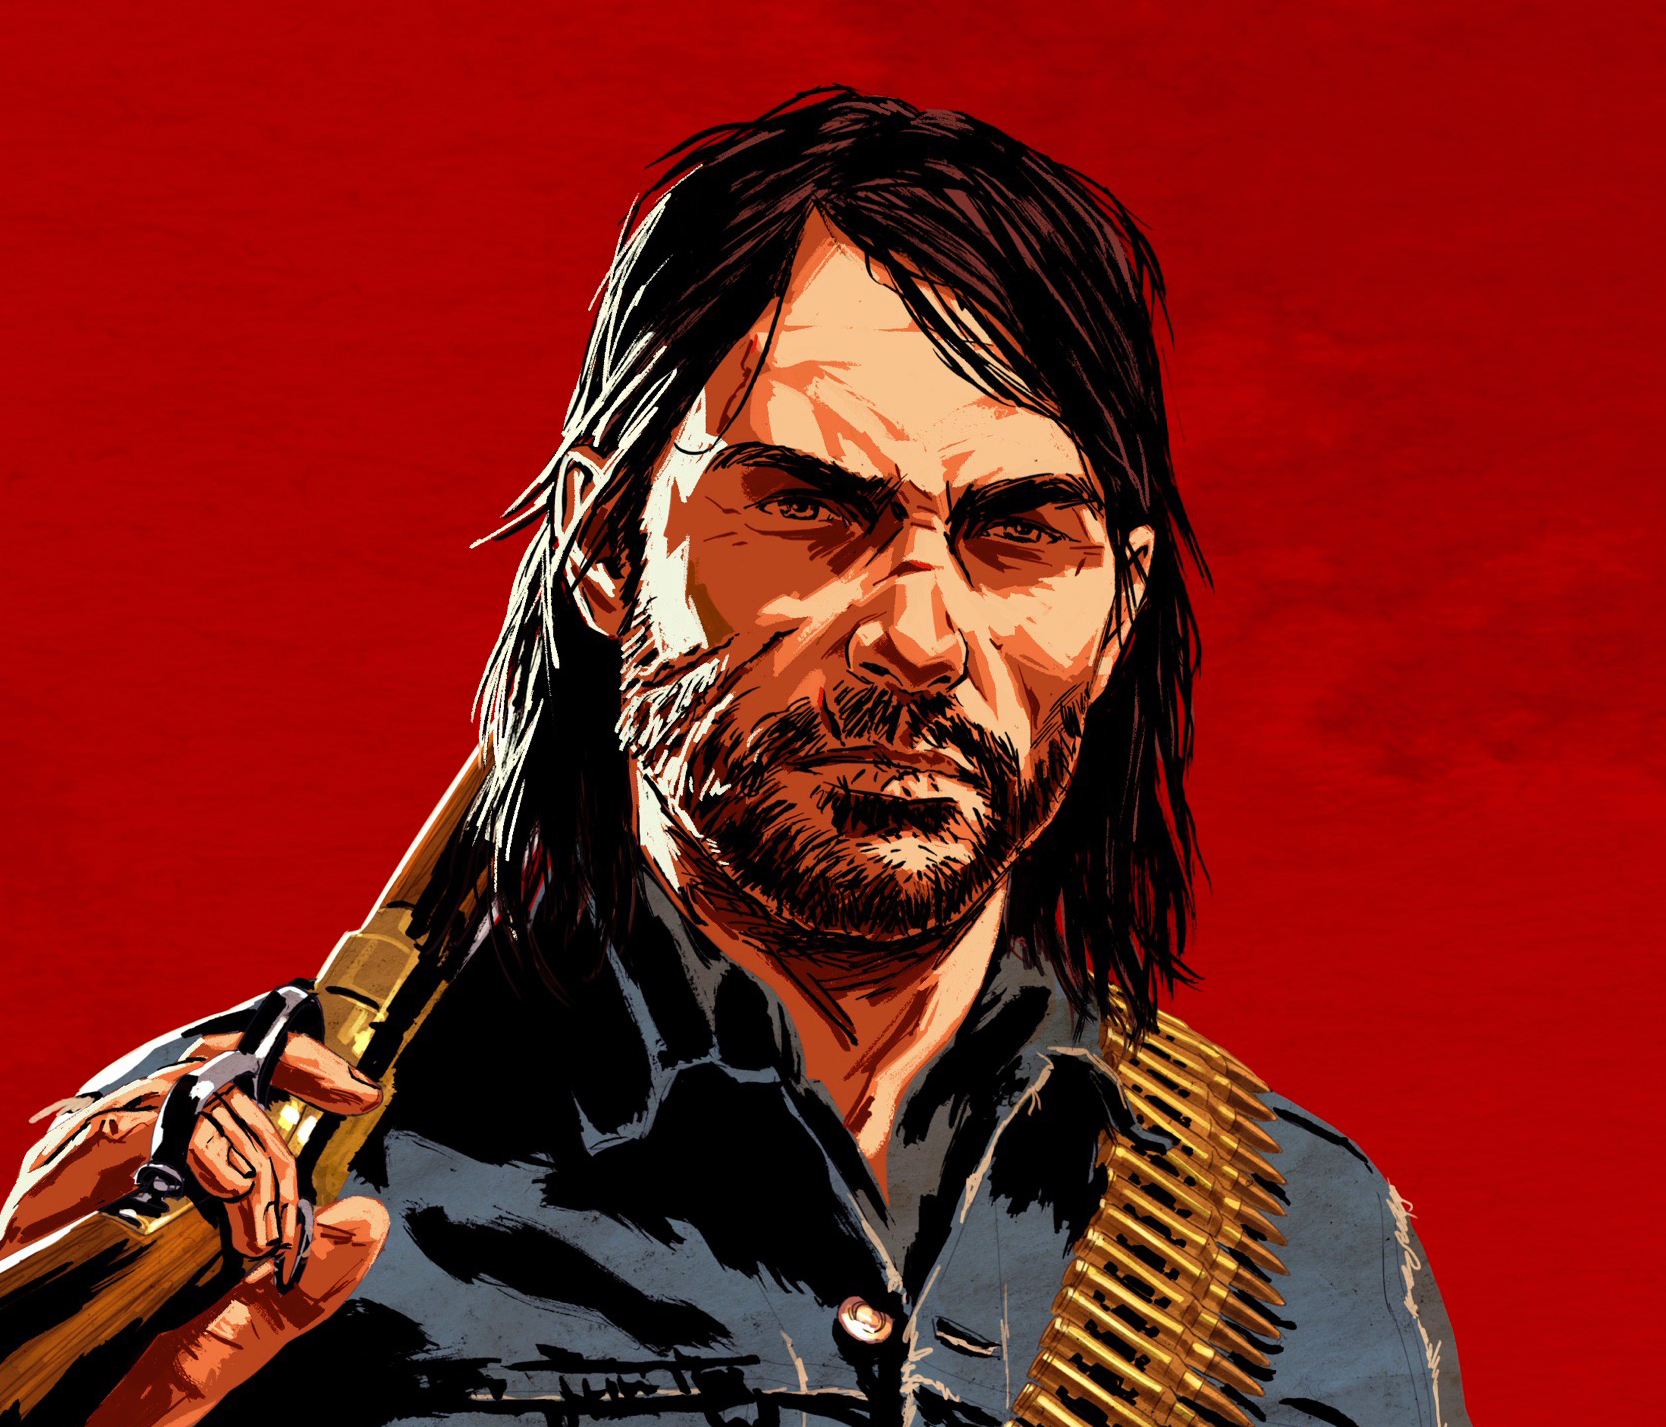 Rockstar divulga primeira arte de possível novo Red Dead Redemption -  ClickPB